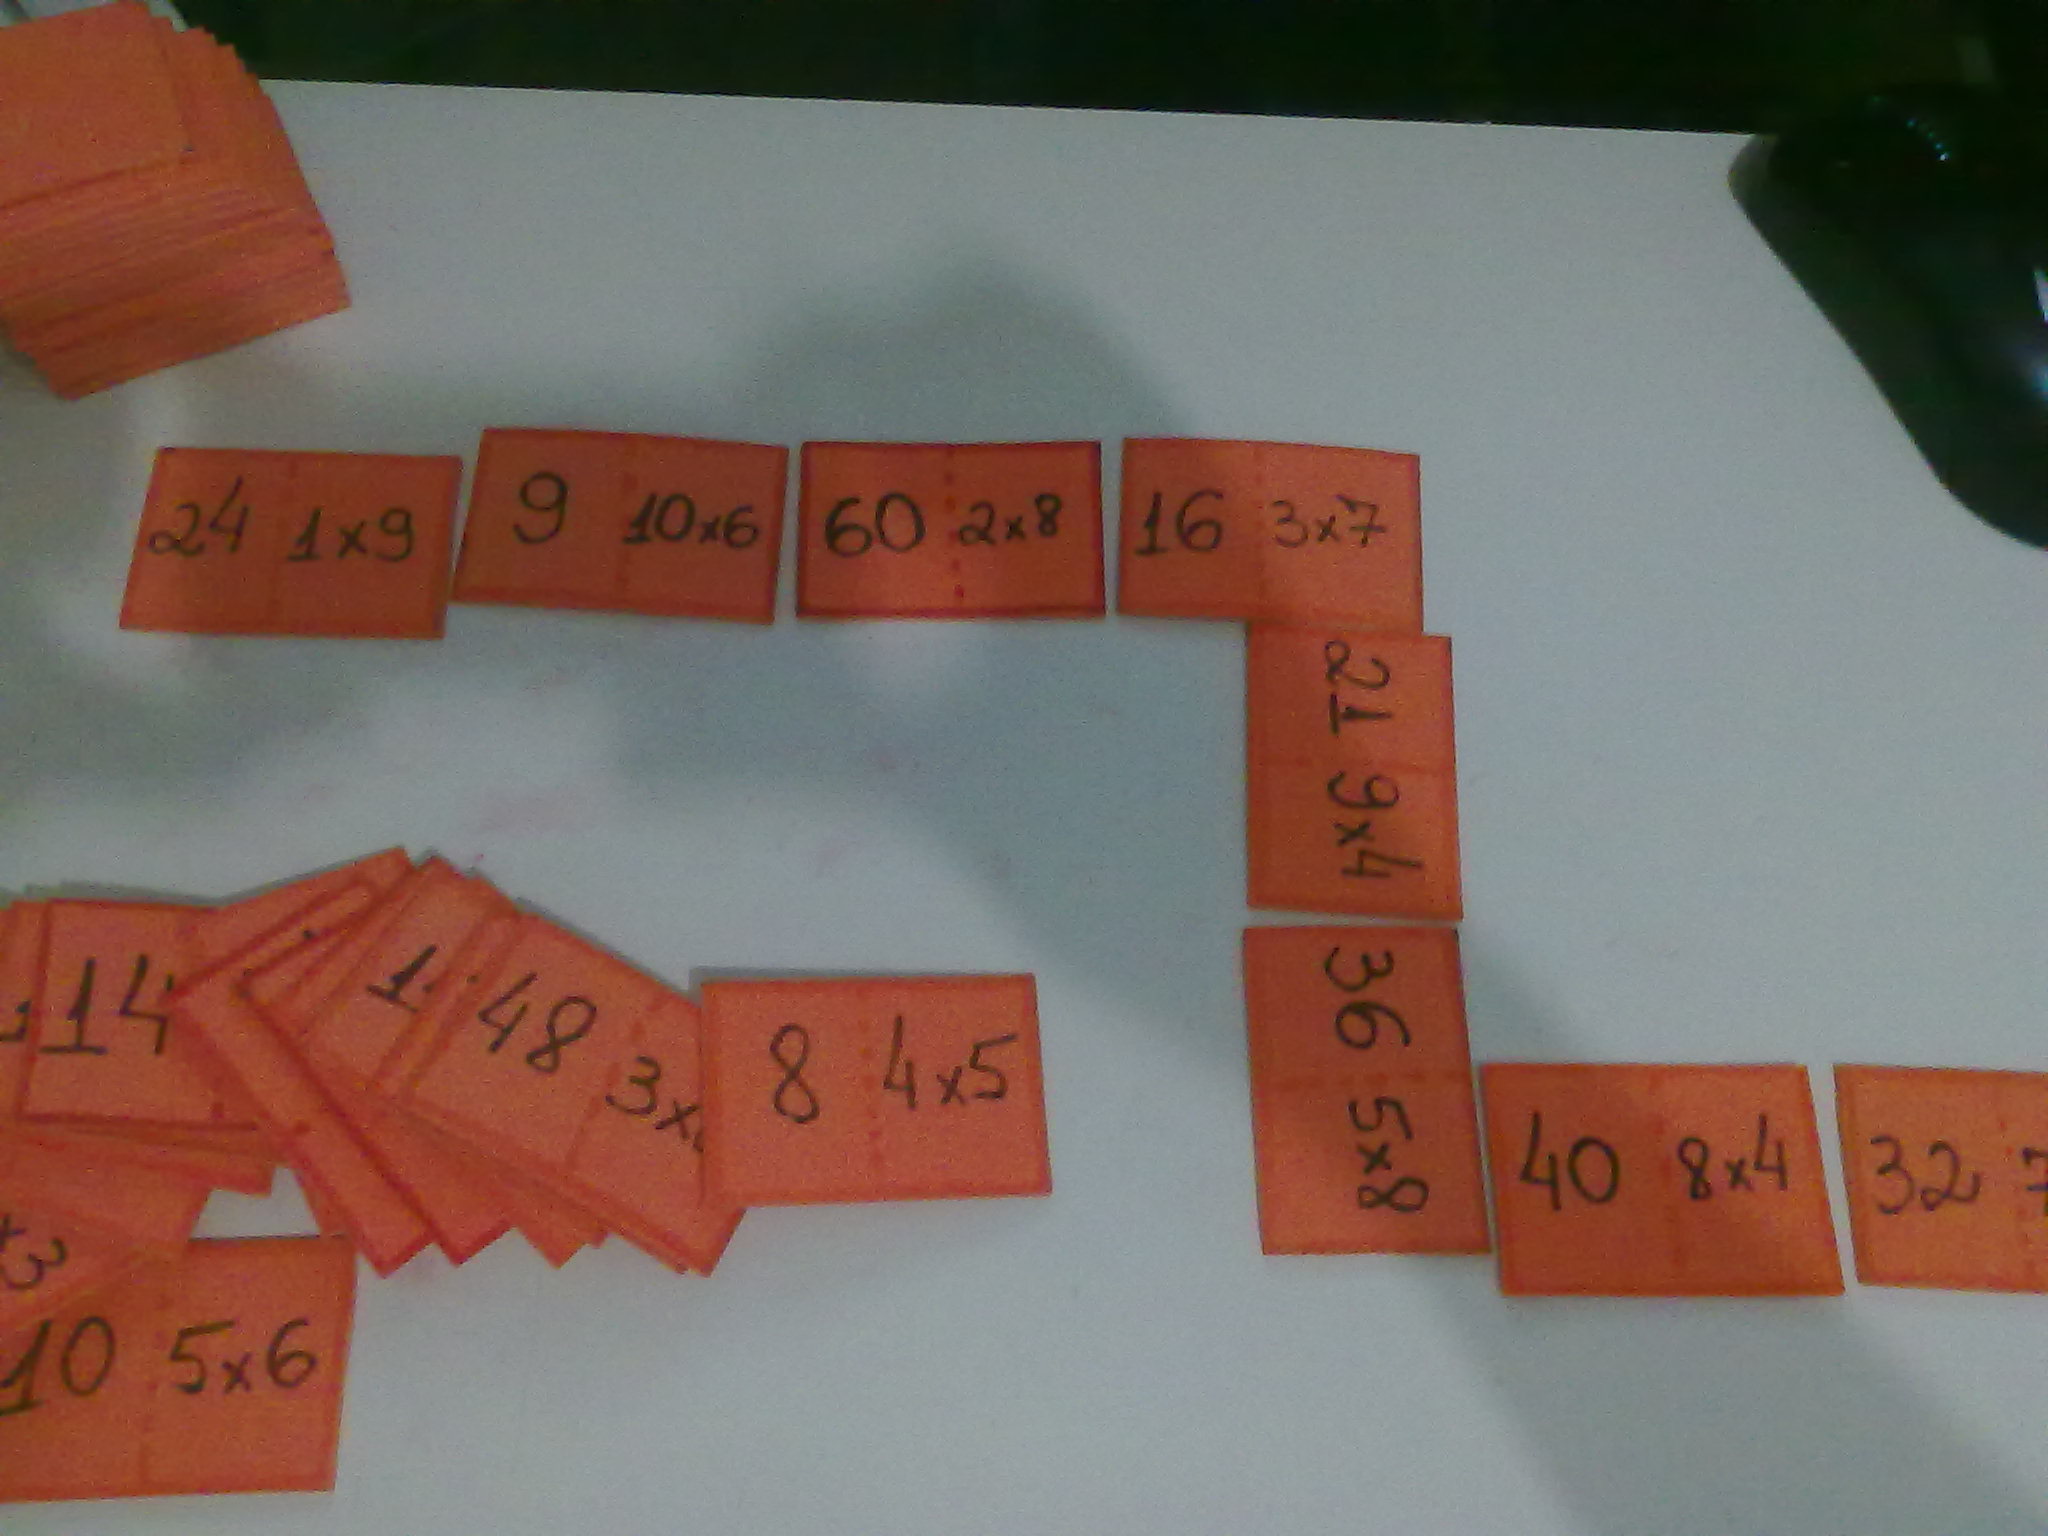 Aprendendo a tabuada de multiplicação de 9 jogando